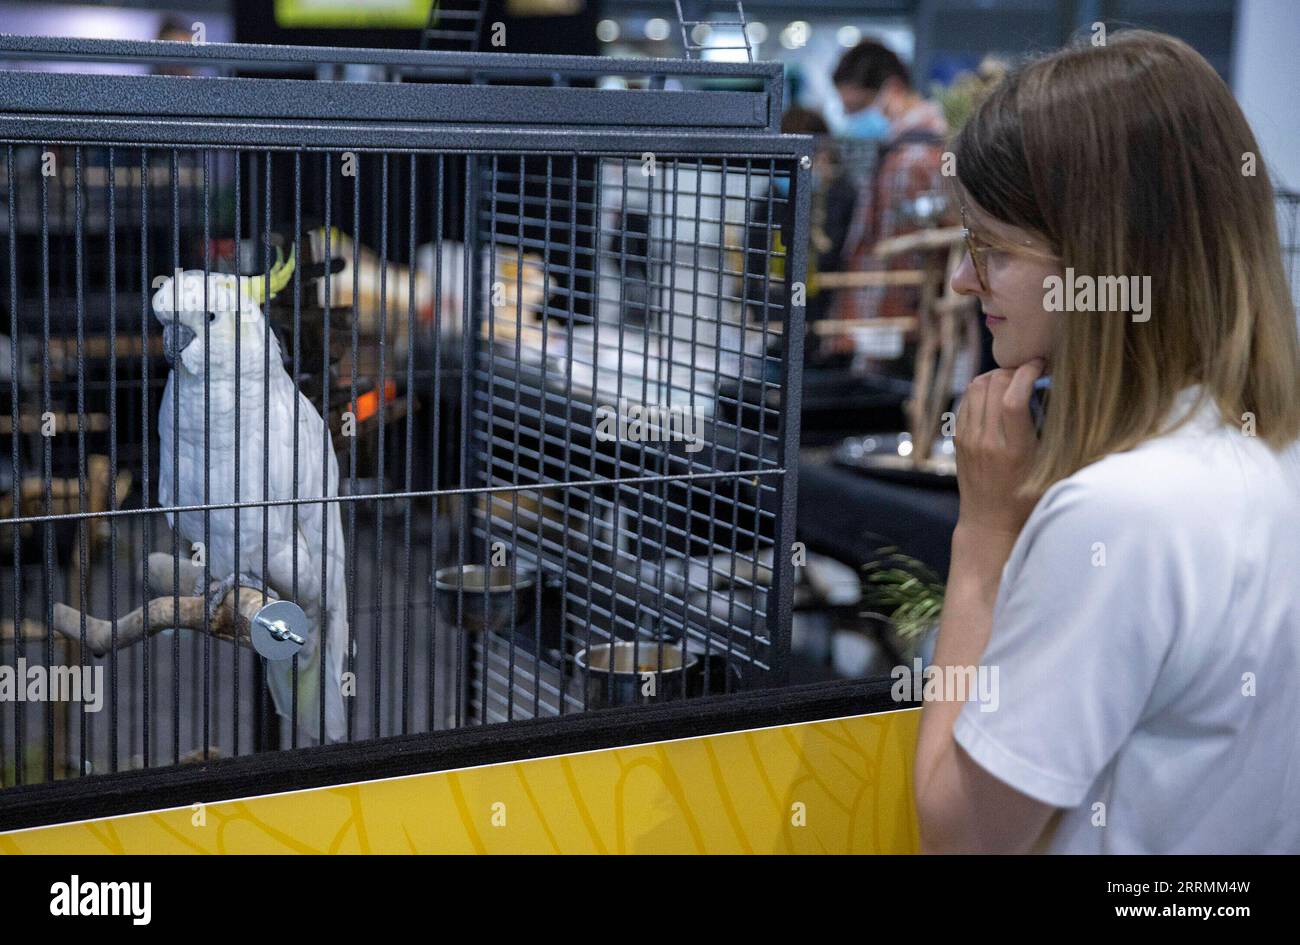 221105 -- SYDNEY, le 5 novembre 2022 -- Une fille regarde un cacatoès exposé lors d'une exposition nationale pour animaux de compagnie à Sydney, Australie, le 5 novembre 2022. AUSTRALIE-SYDNEY-PET-SHOW BaixXuefei PUBLICATIONxNOTxINxCHN Banque D'Images